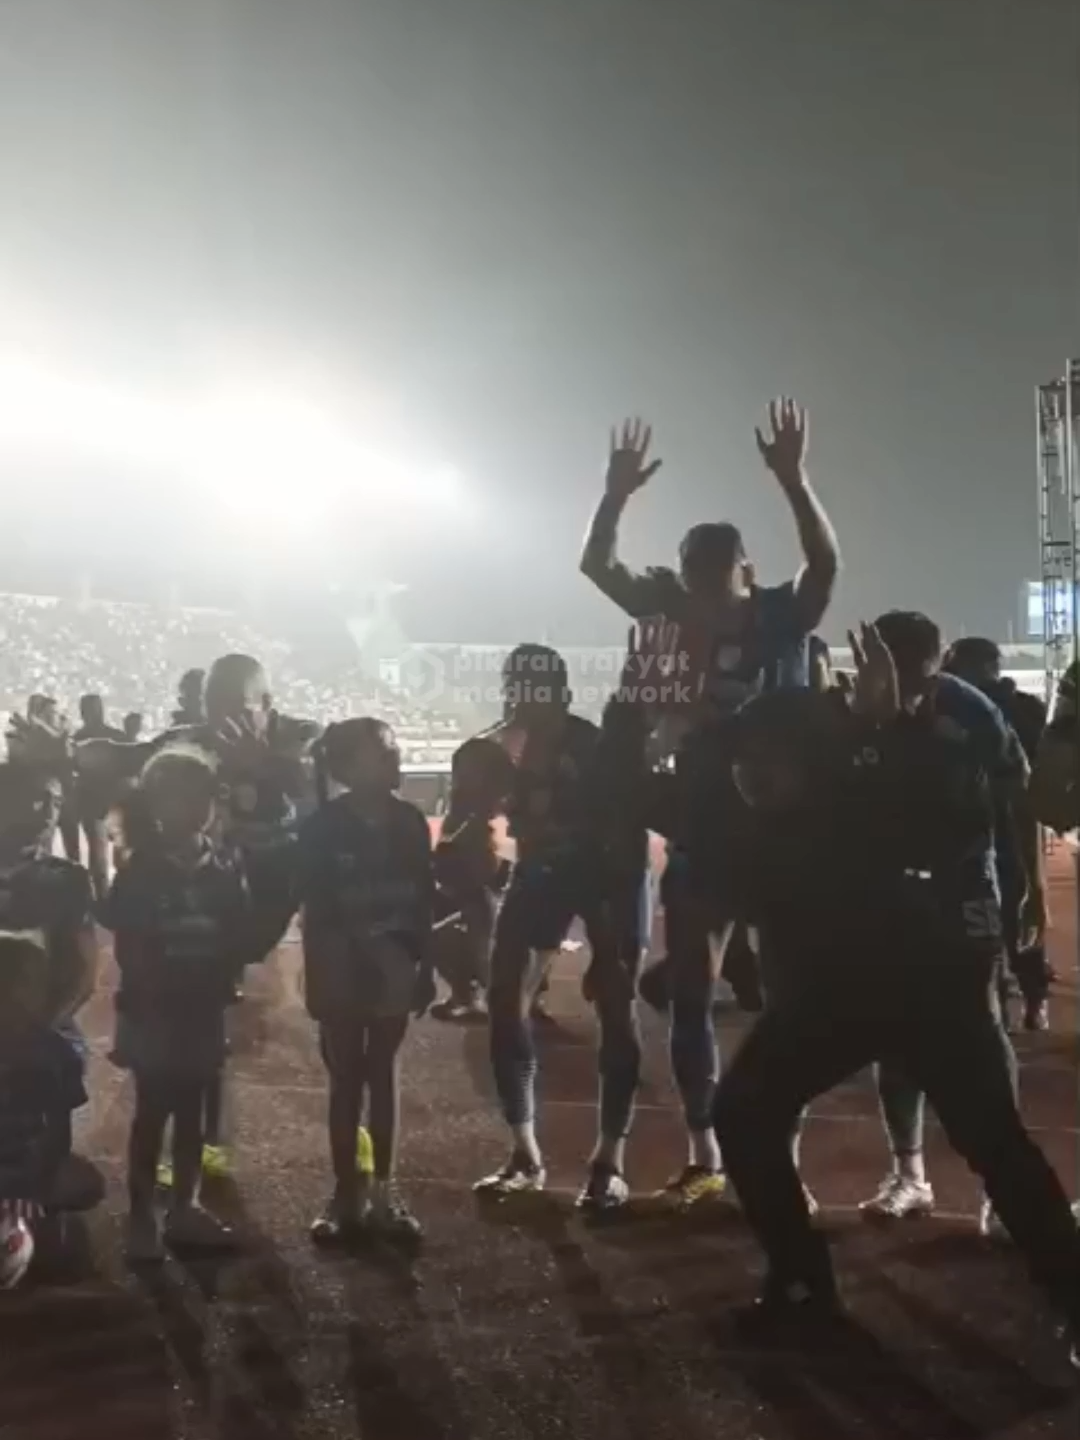 Persib Bandung menang telak dari Madura United, Ciro dkk merayakan kemenangan dengan dengan para bobotoh di Stadion usai pertandingan. Video: Armin Abdul Jabbar/ Pikiran Rakyat #persib #bandung #ciro #bobotoh